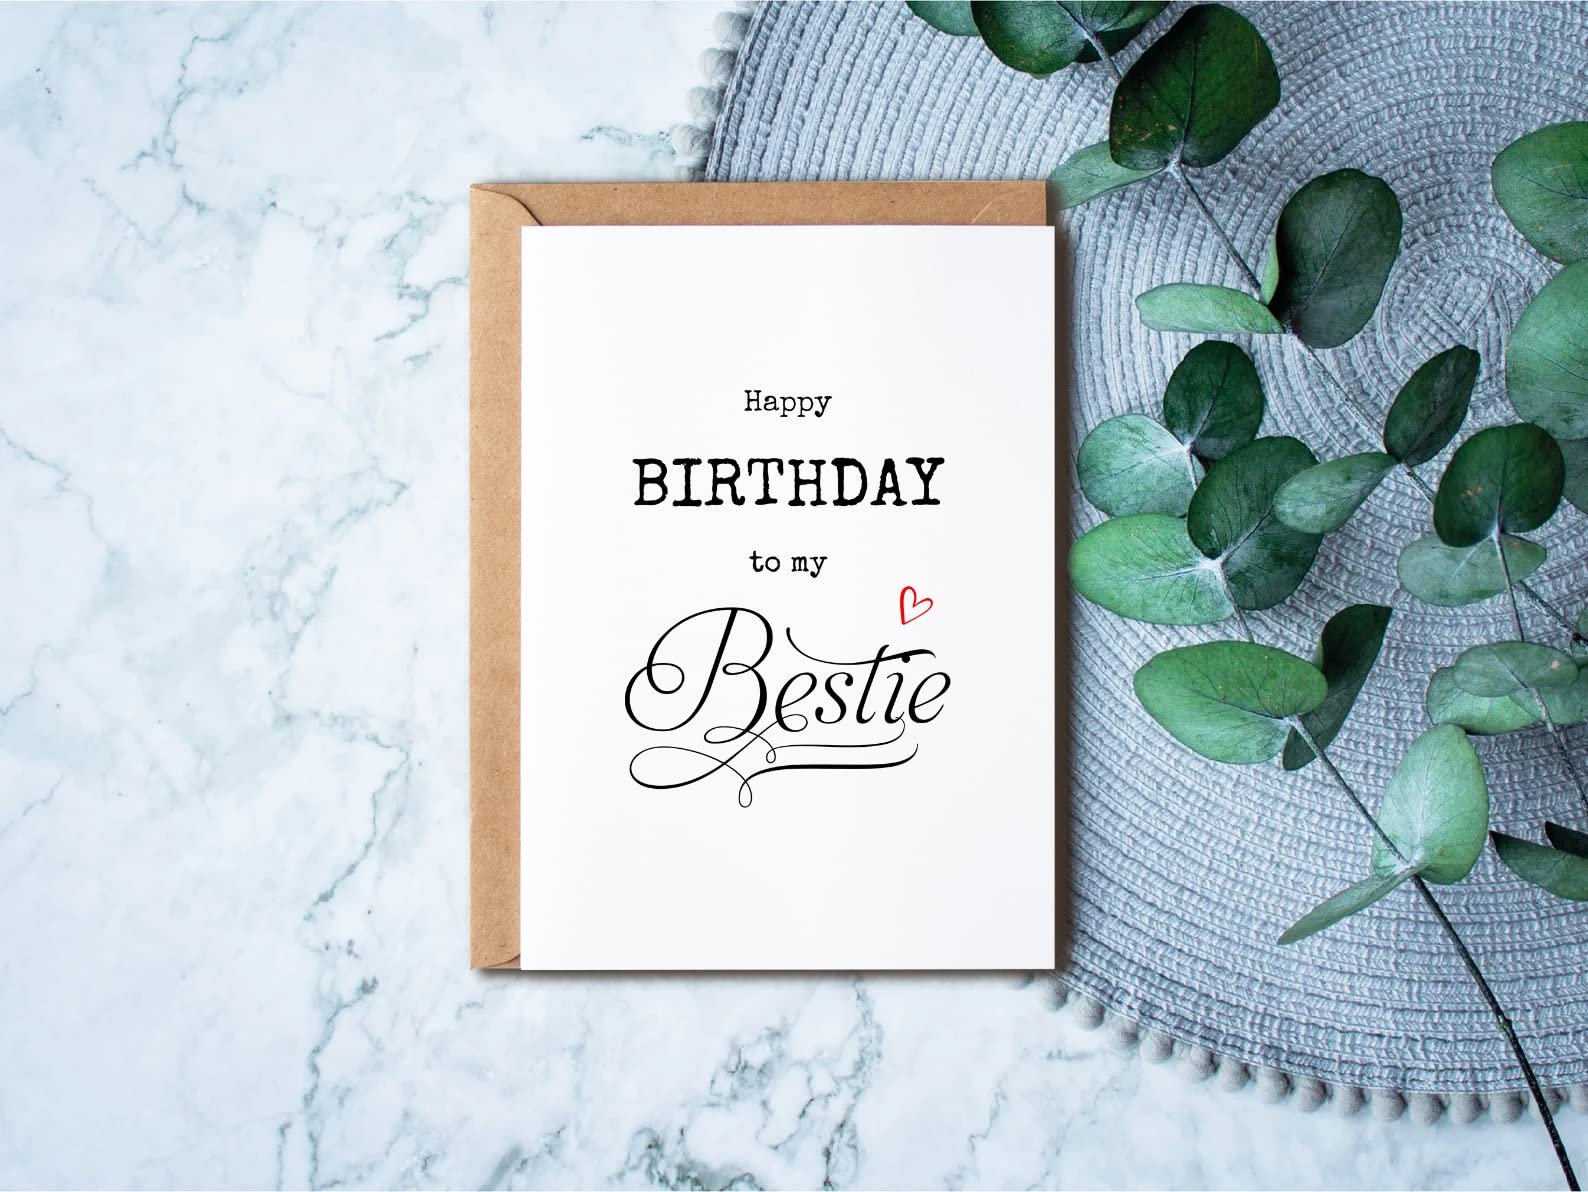 Bestie Birthday card